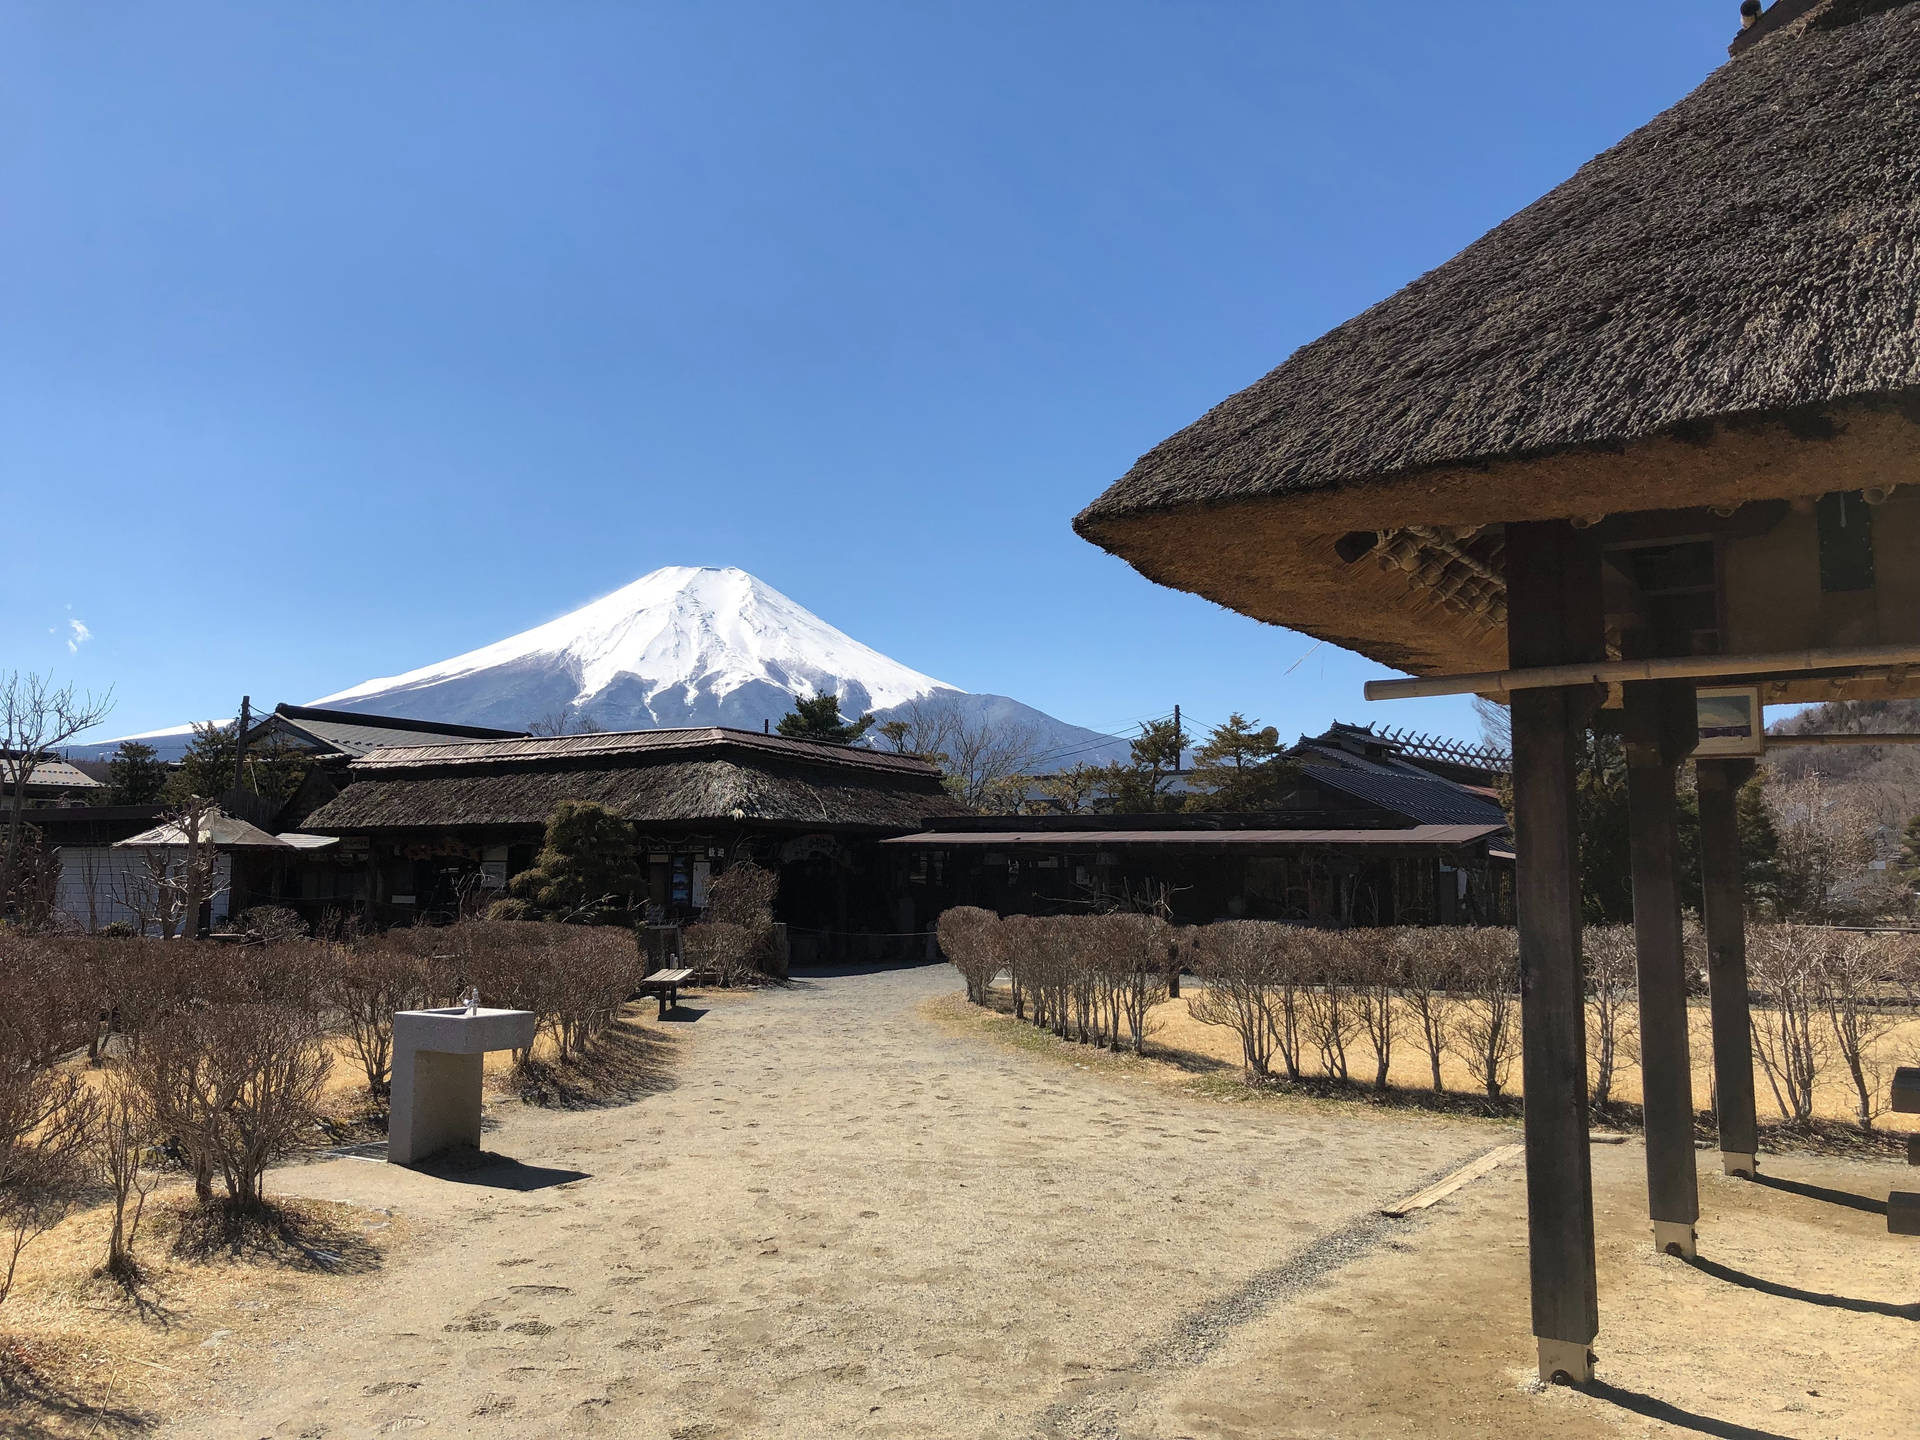 Native Huts And Mount Fuji